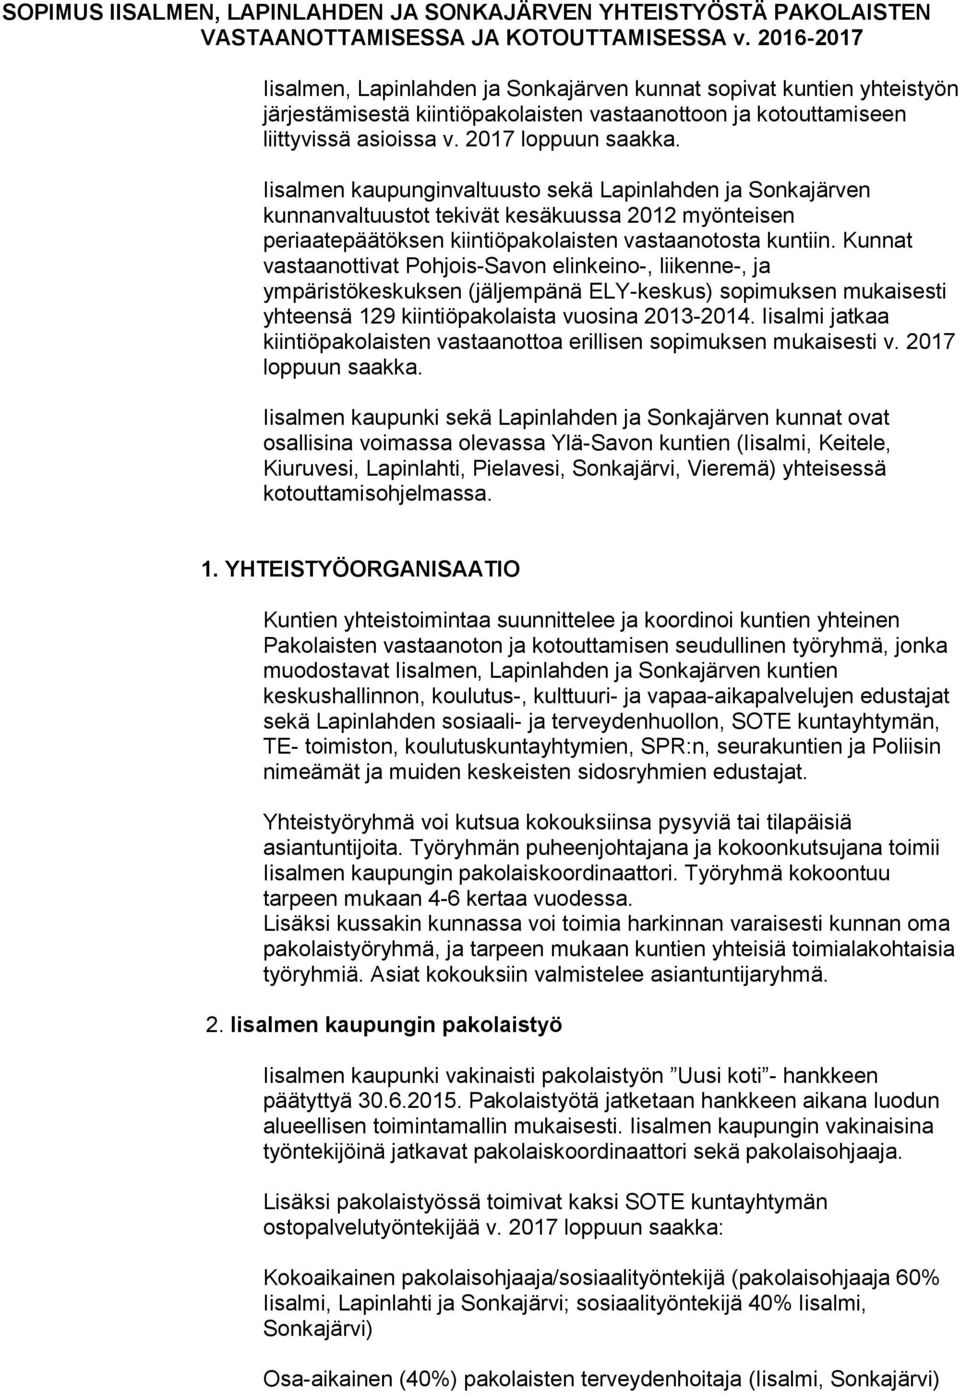 Iisalmen kaupunginvaltuusto sekä Lapinlahden ja Sonkajärven kunnanvaltuustot tekivät kesäkuussa 2012 myönteisen periaatepäätöksen kiintiöpakolaisten vastaanotosta kuntiin.